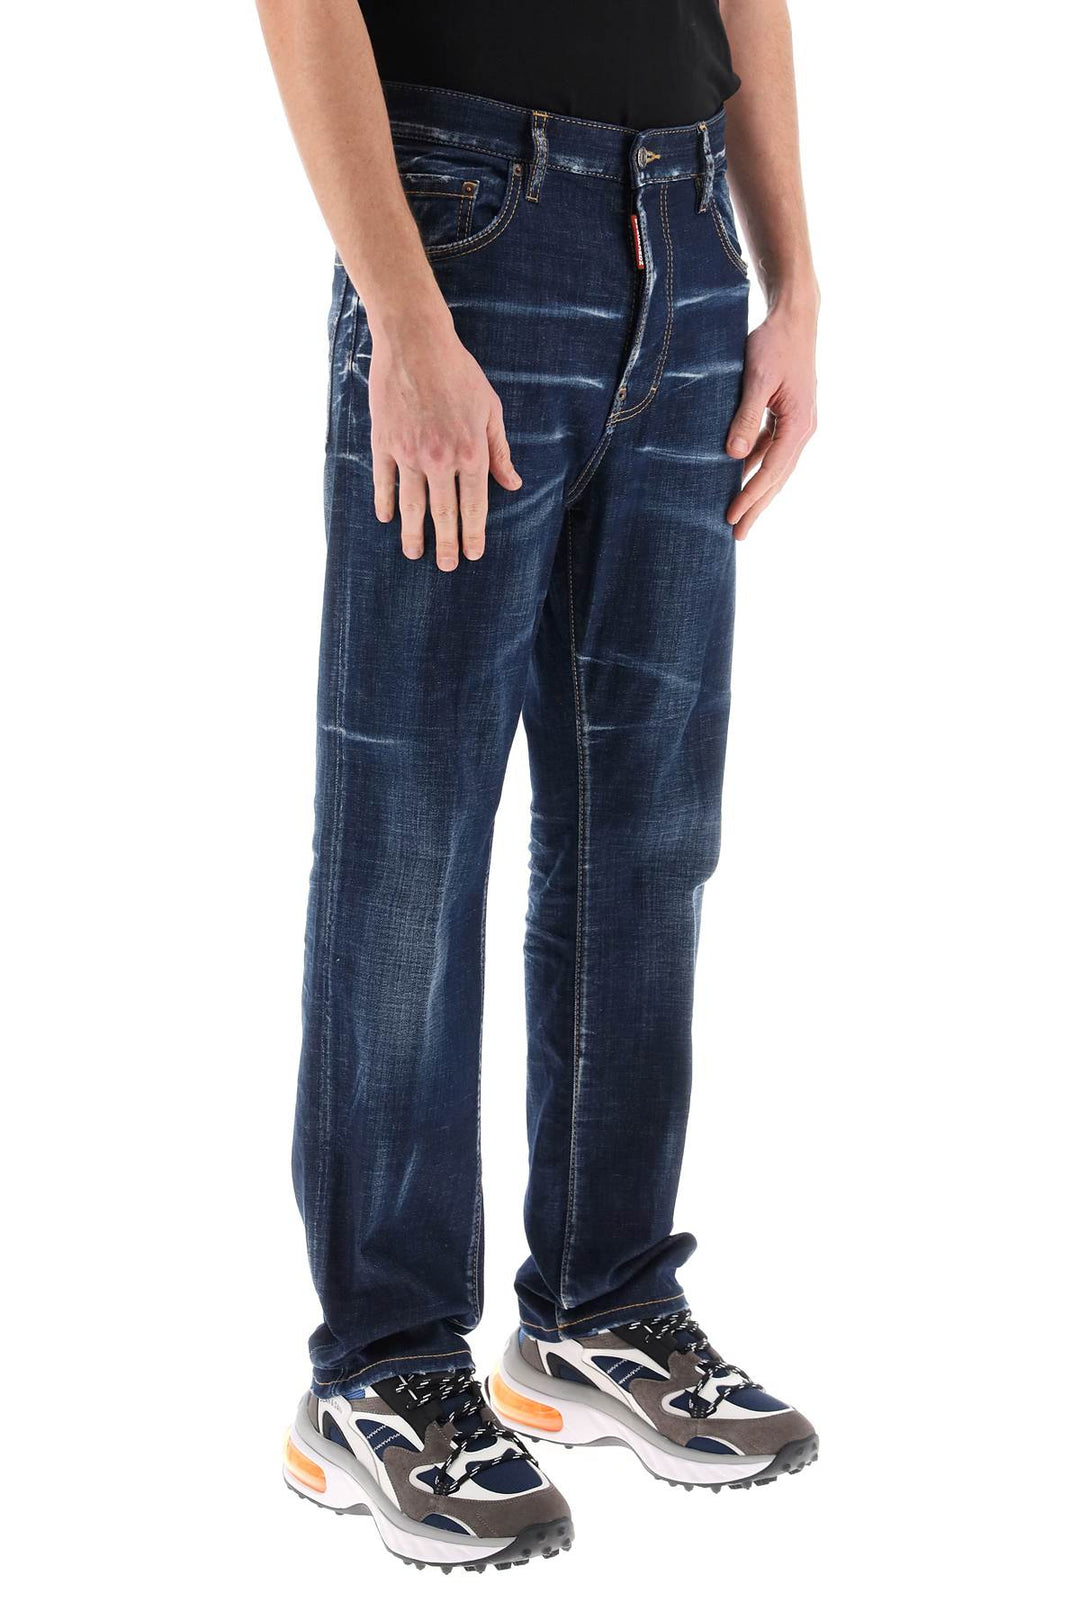 Dsquared2 642 Jeans In Dark Clean Wash   Blu